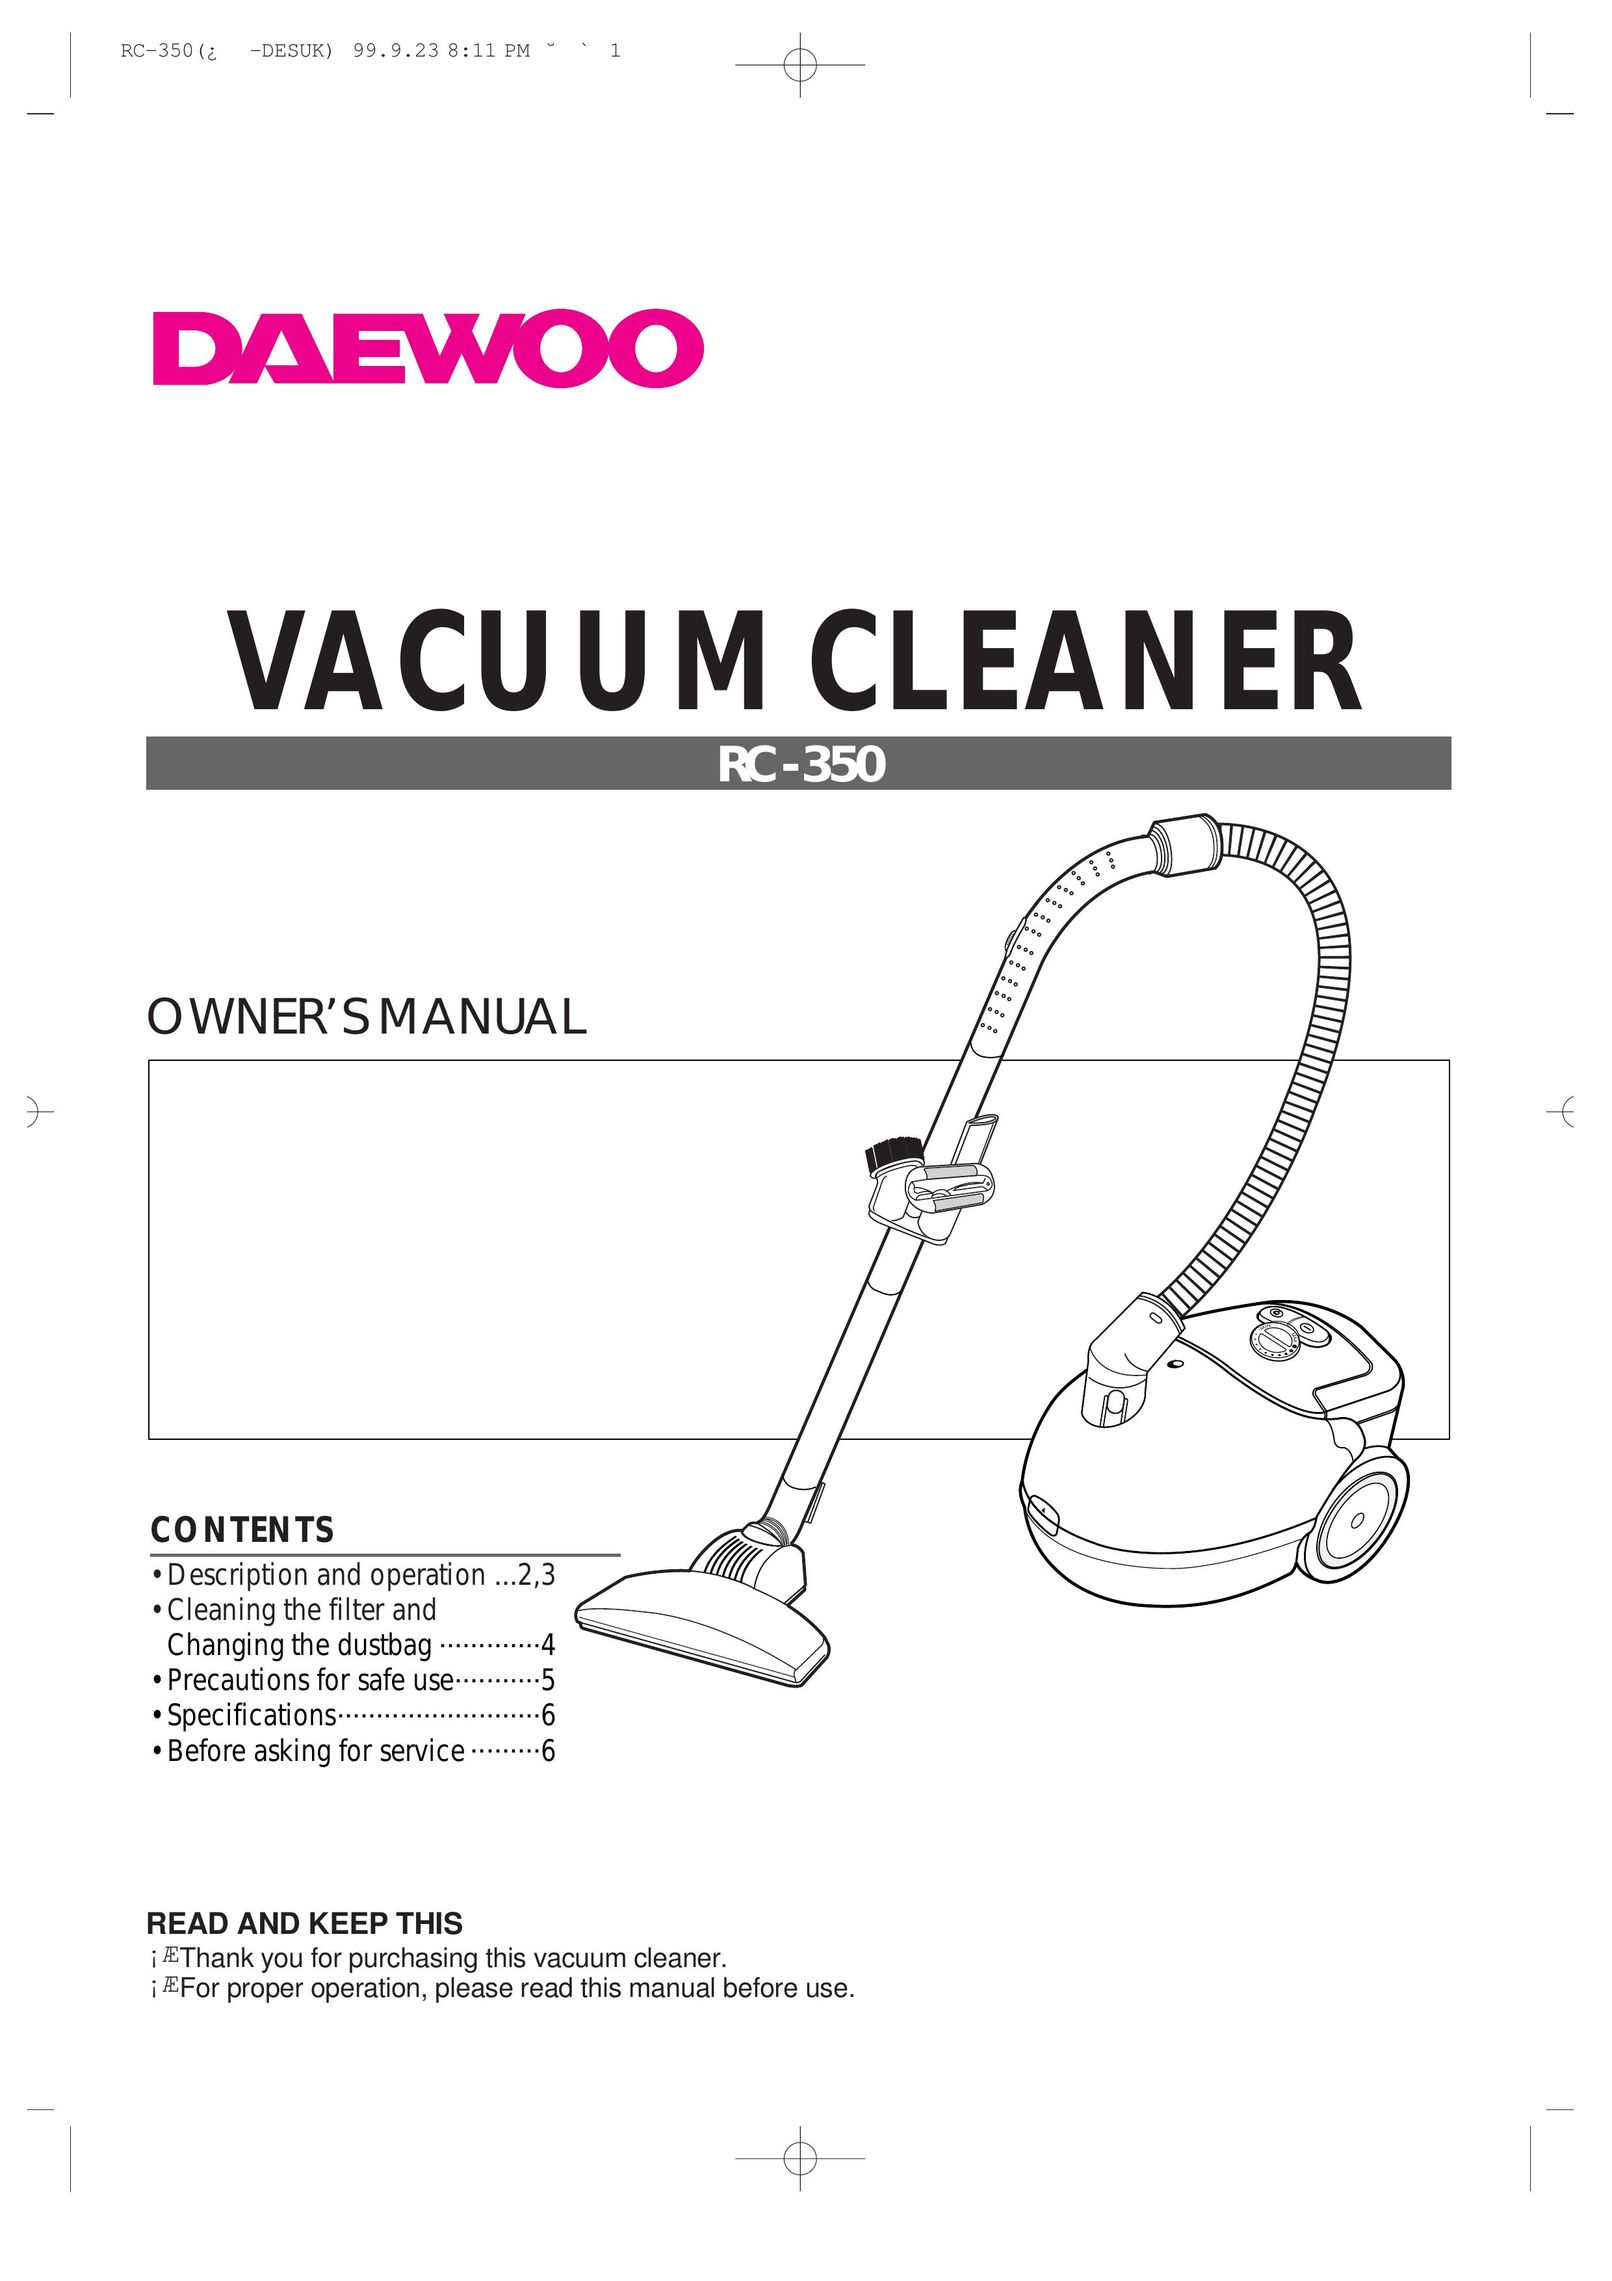 Daewoo RC-350 Vacuum Cleaner User Manual